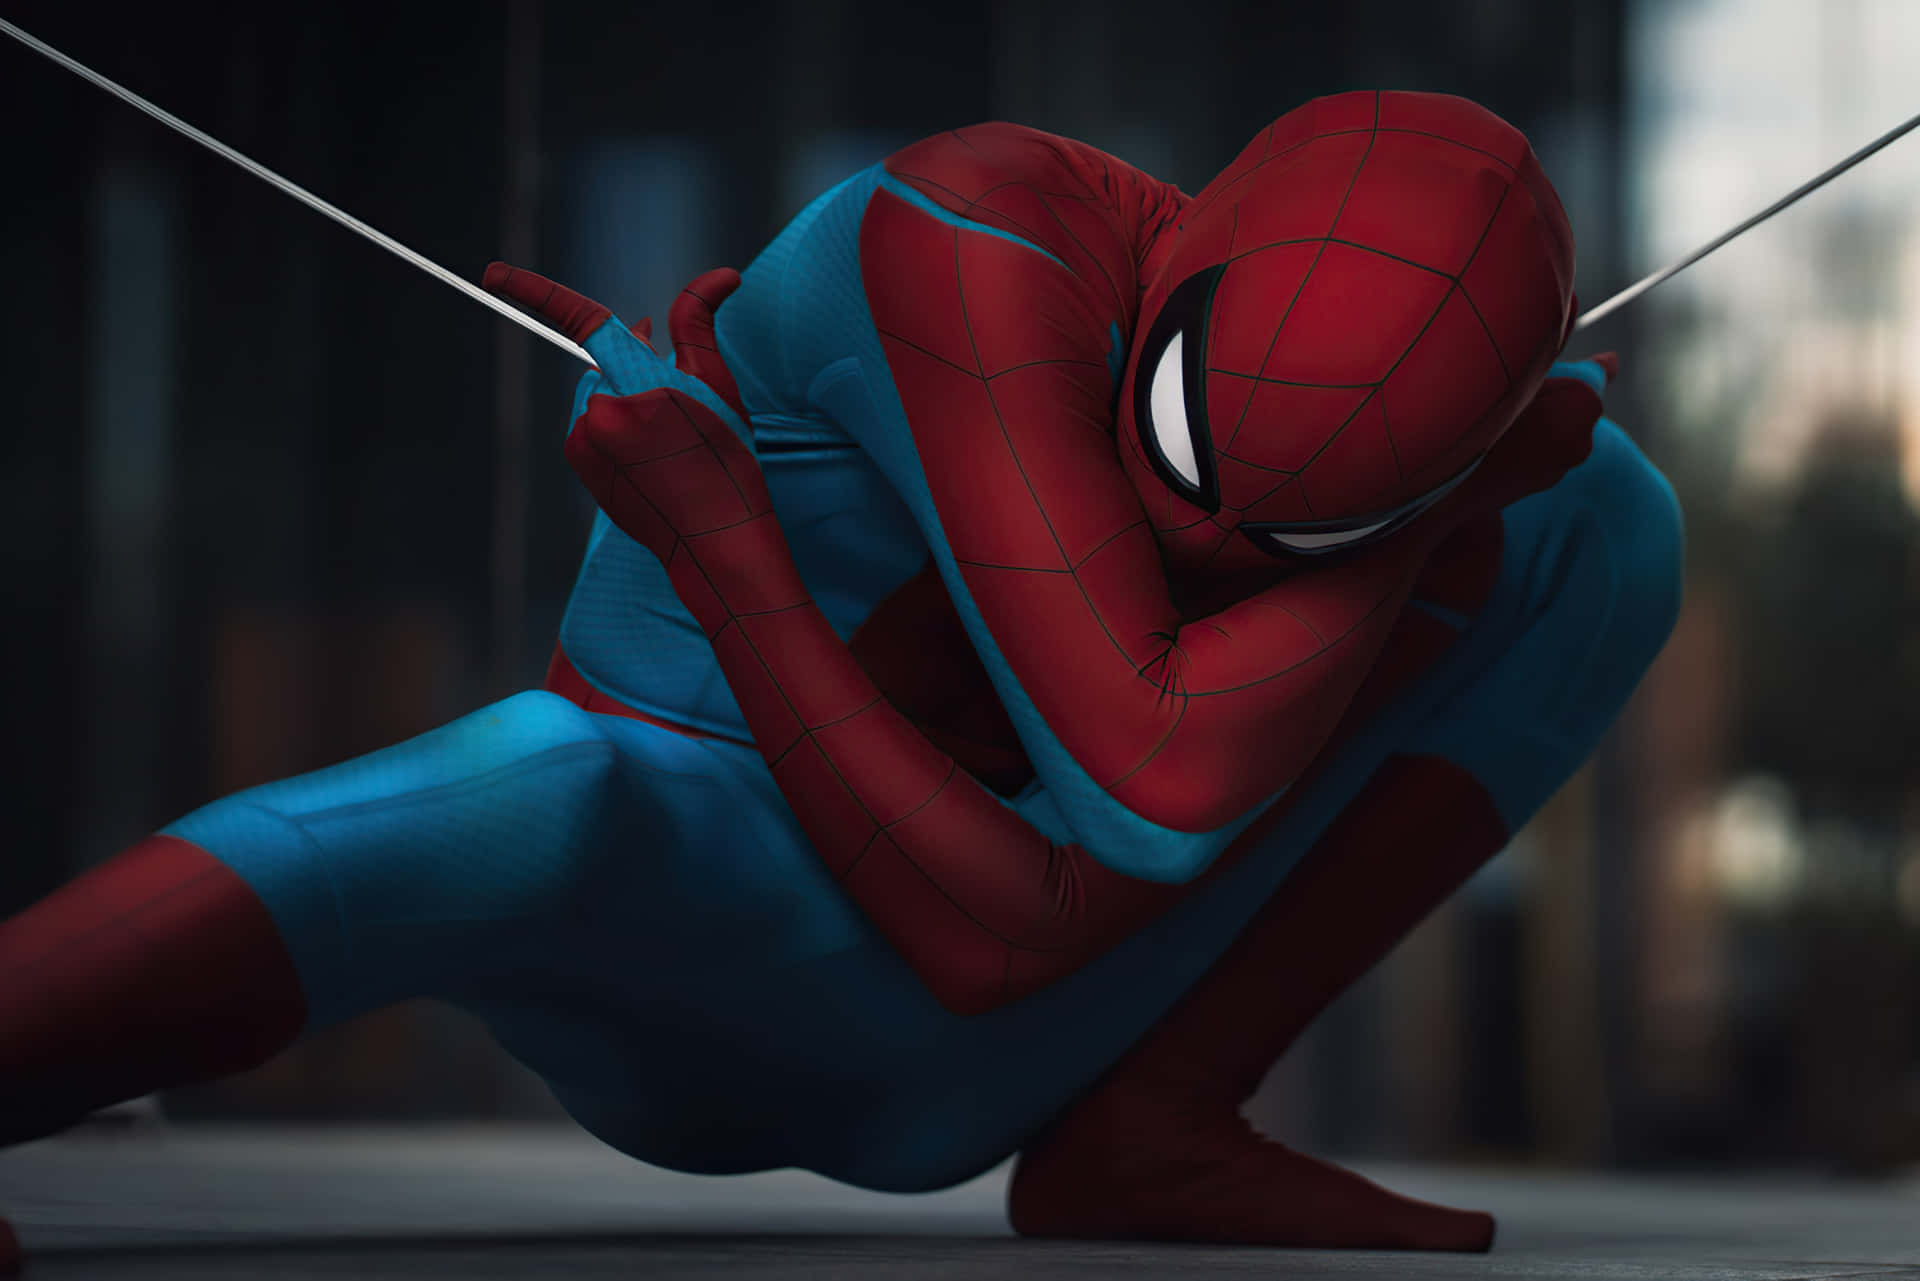 Spider Man - The Amazing Spider Man - Hd Wallpaper Background